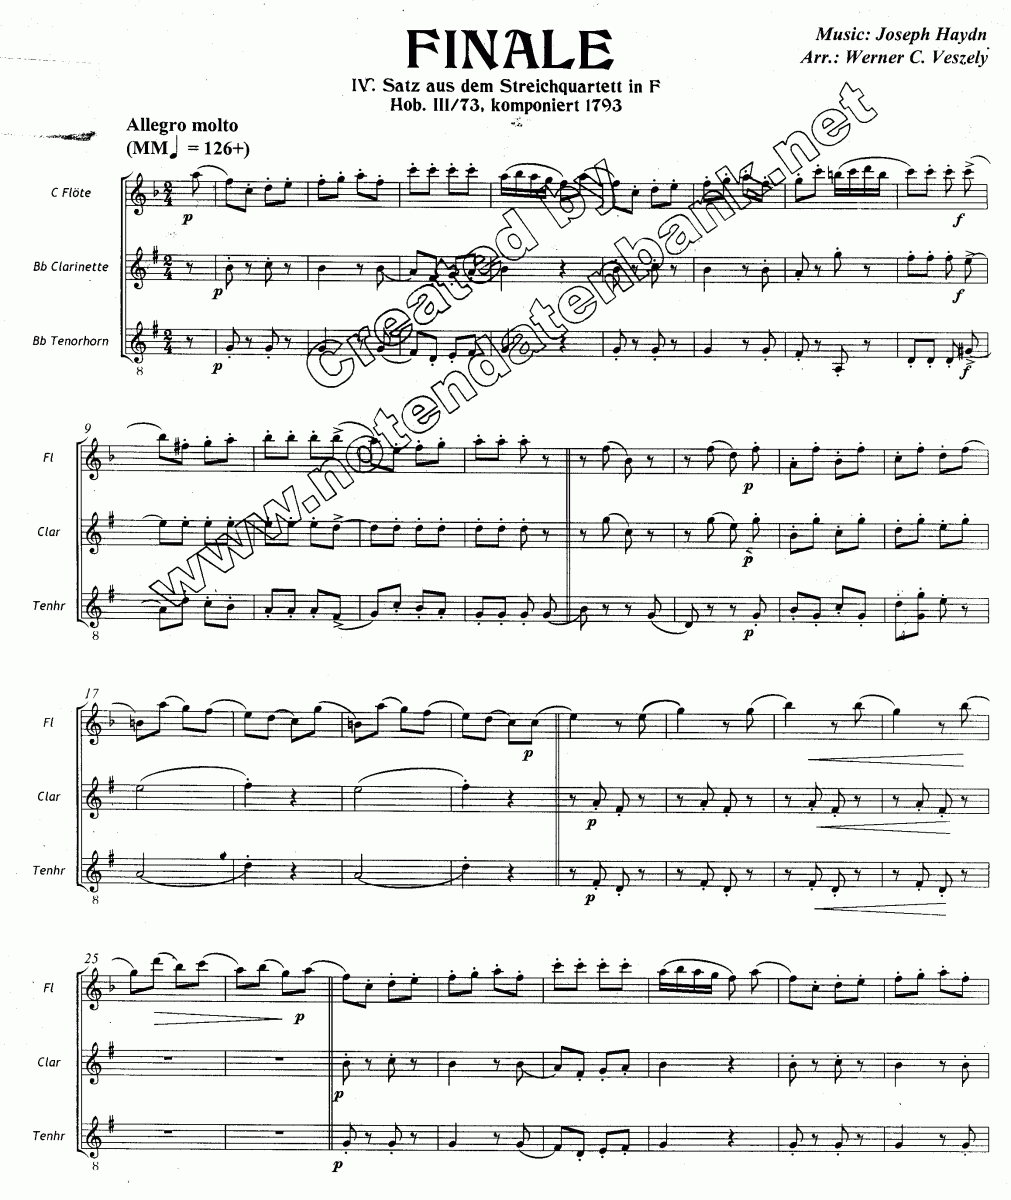 Allegro - Sample sheet music